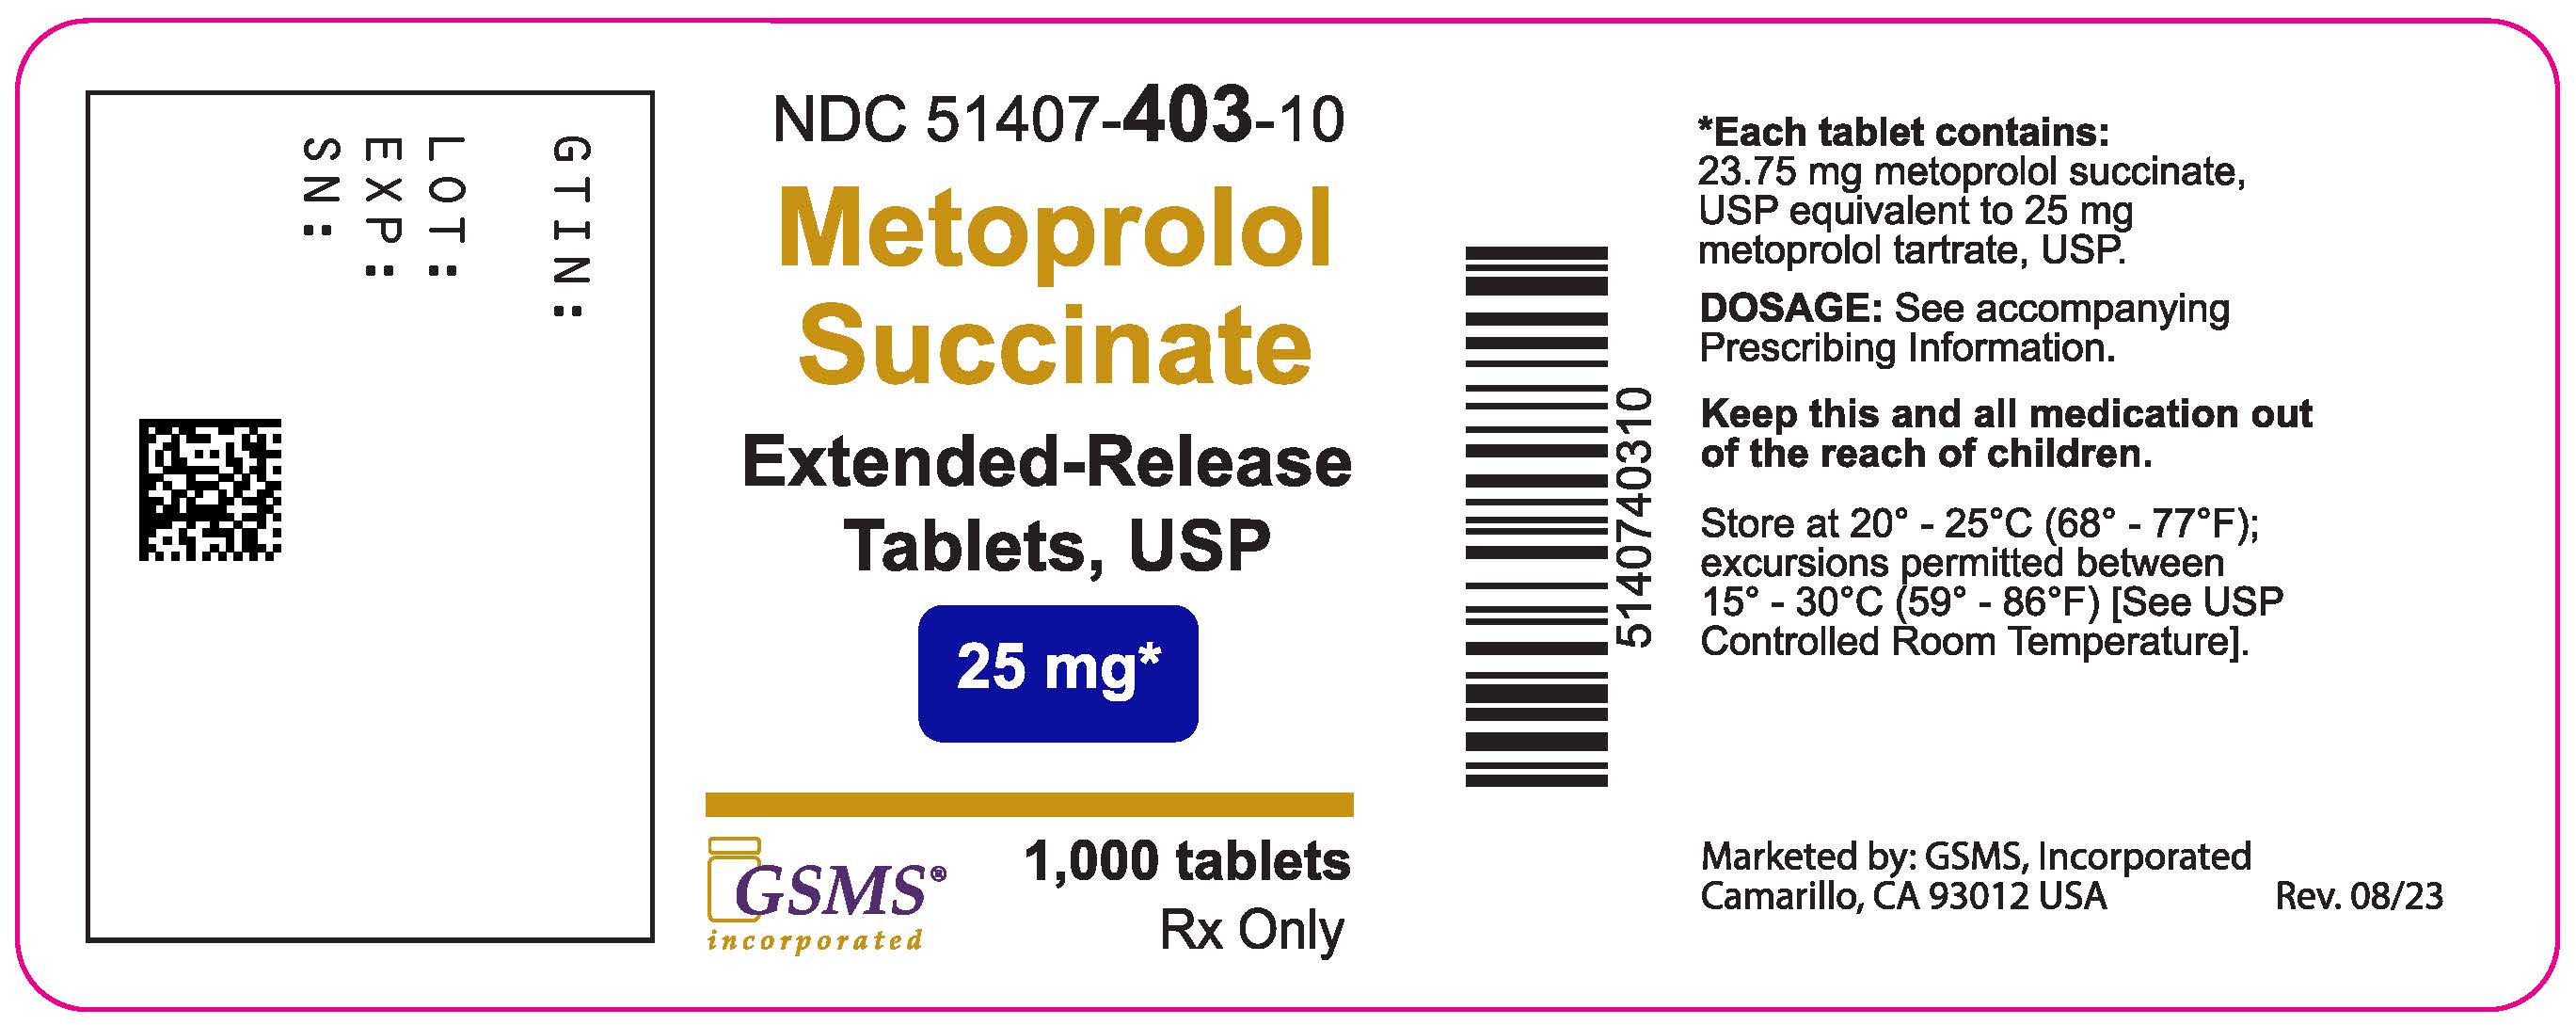 51407-403-10LB - Metoprolol Succinate ER - Ingenus - Rev. 0823.jpg